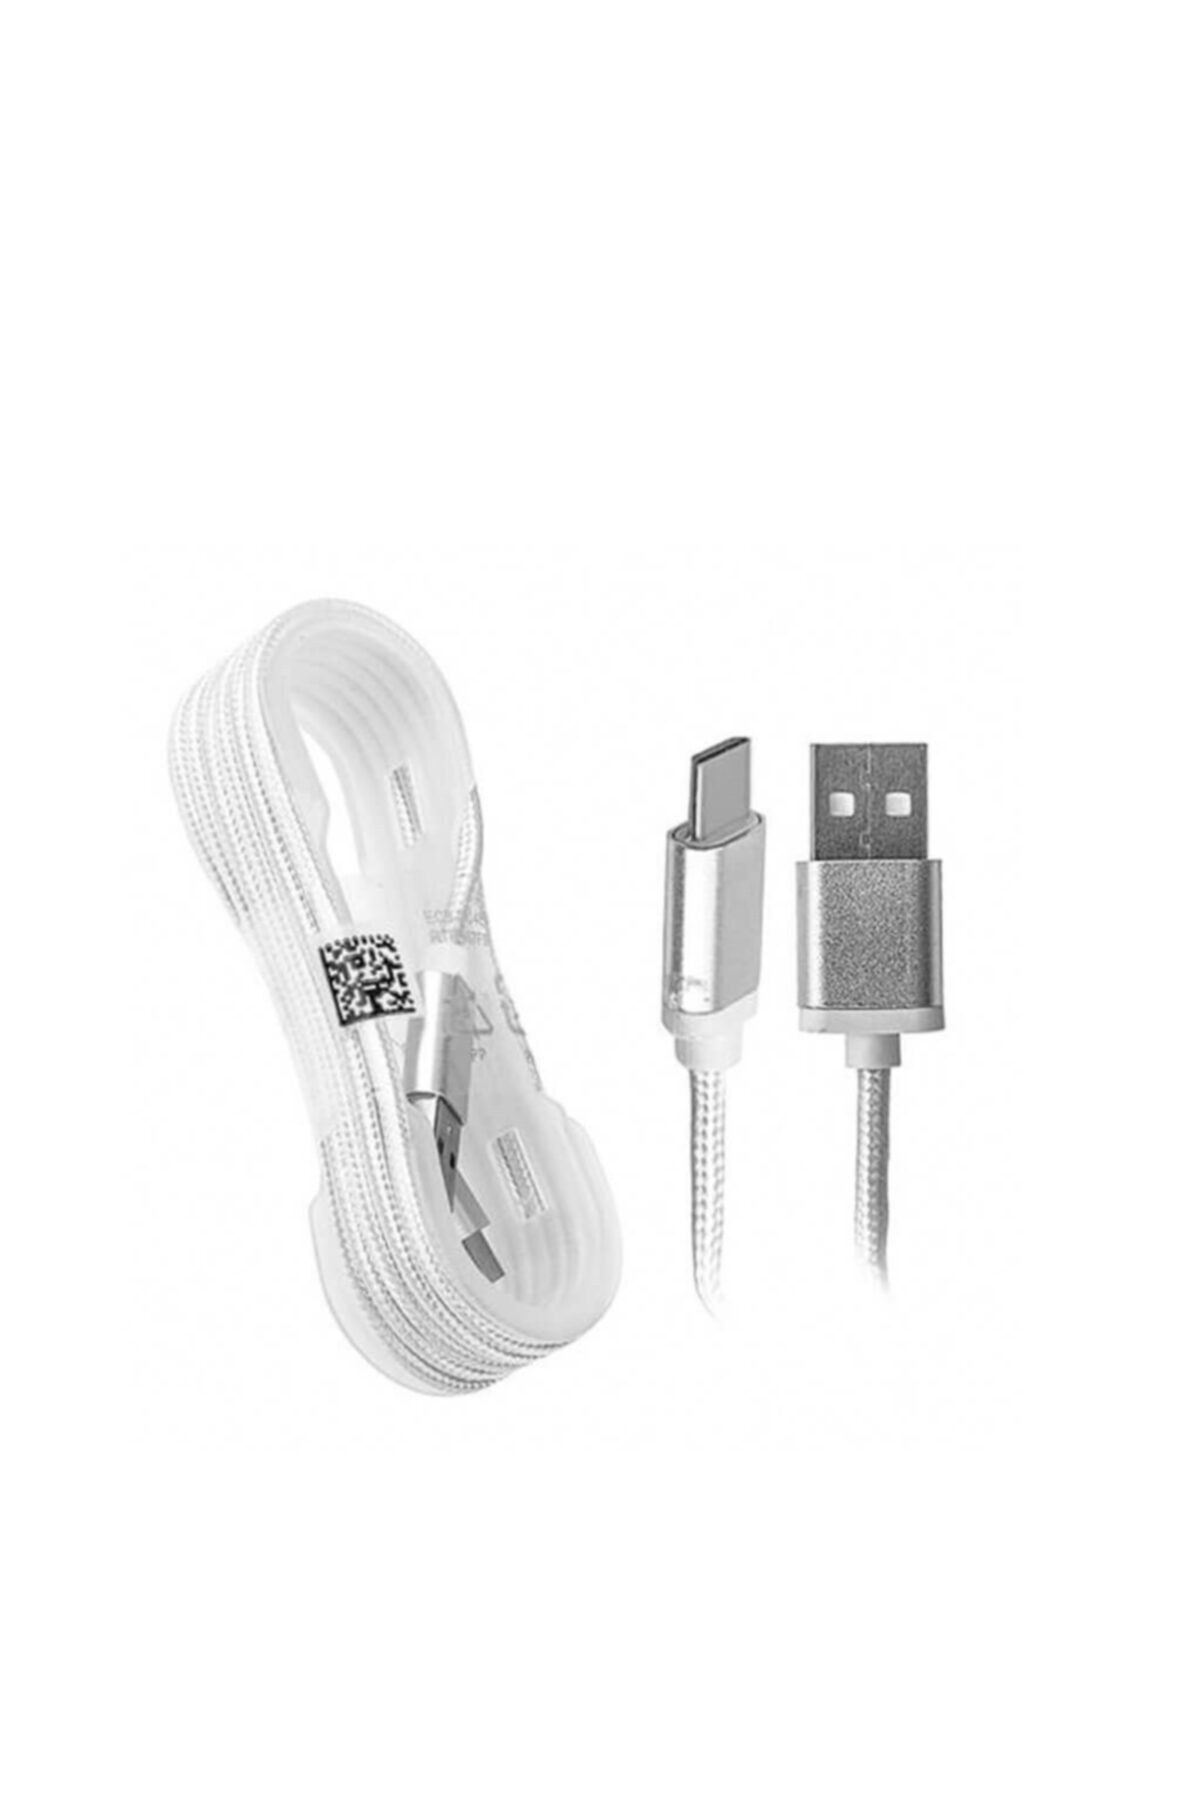 Fabrika Hasır Örgülü Metal Başlıklı Micro_usb Şarj Kablosu Beyaz